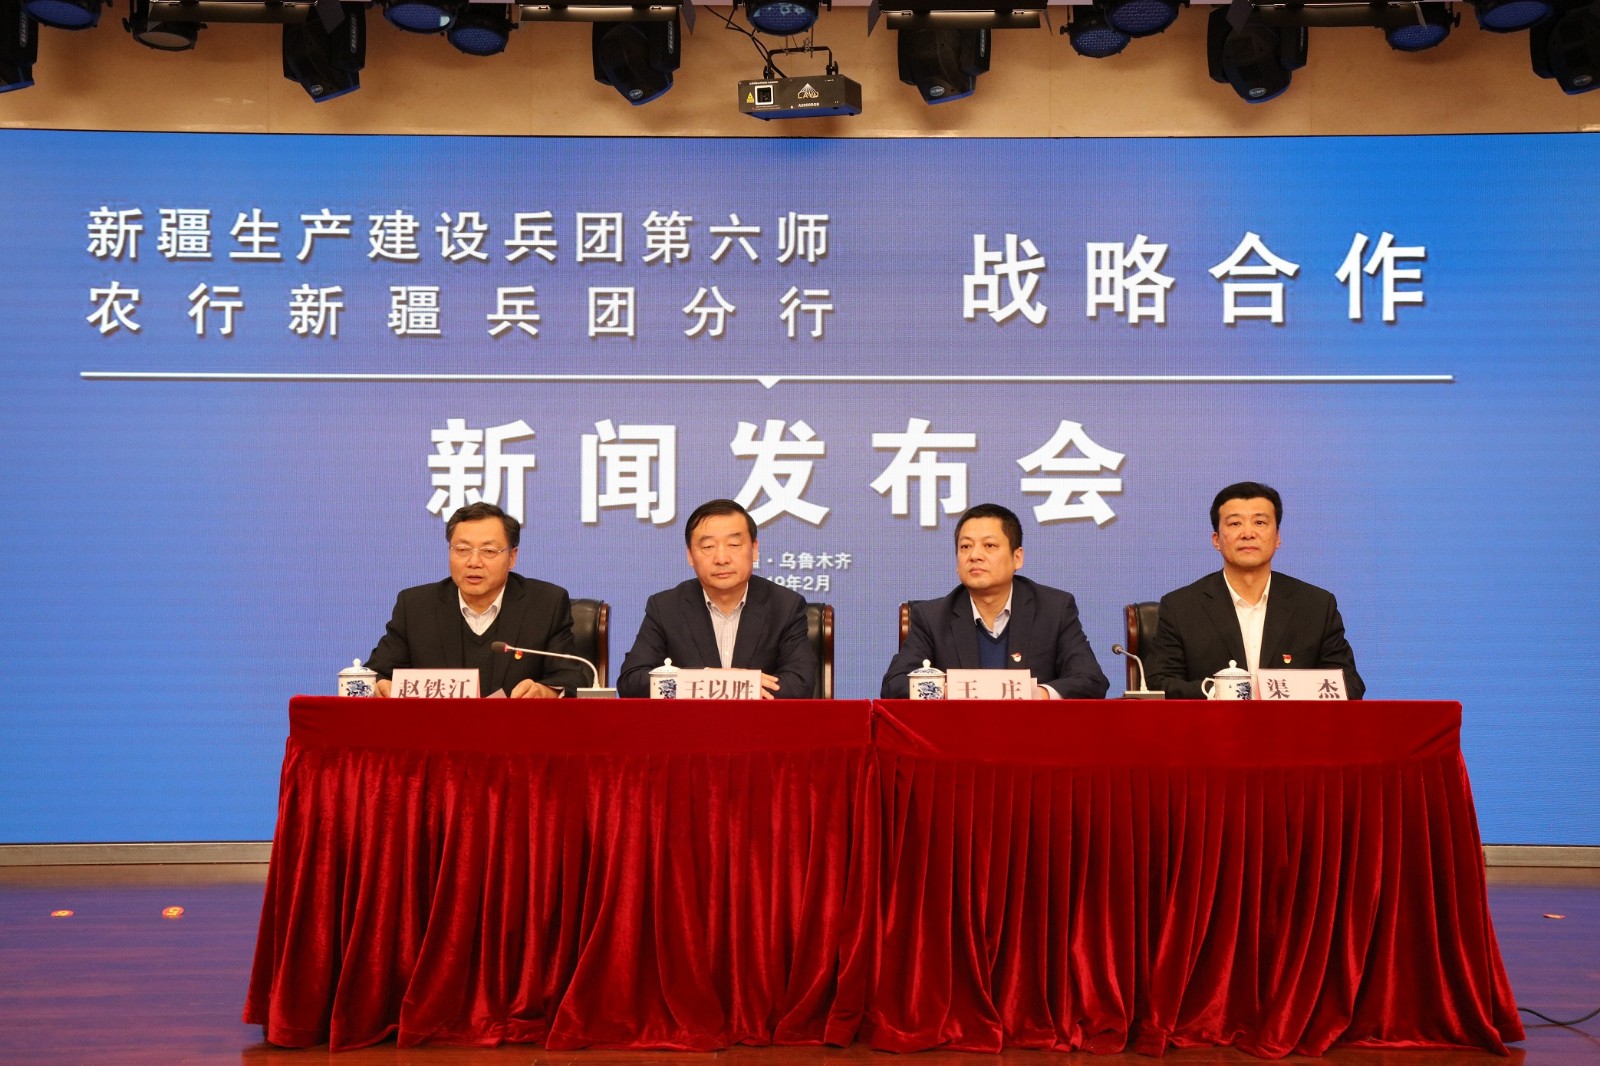 22 февраля армейский филиал Сельскохозяйственного банка Китая подписал соглашение о стратегическом сотрудничестве с 6-й дивизией города Уцзяцюй.